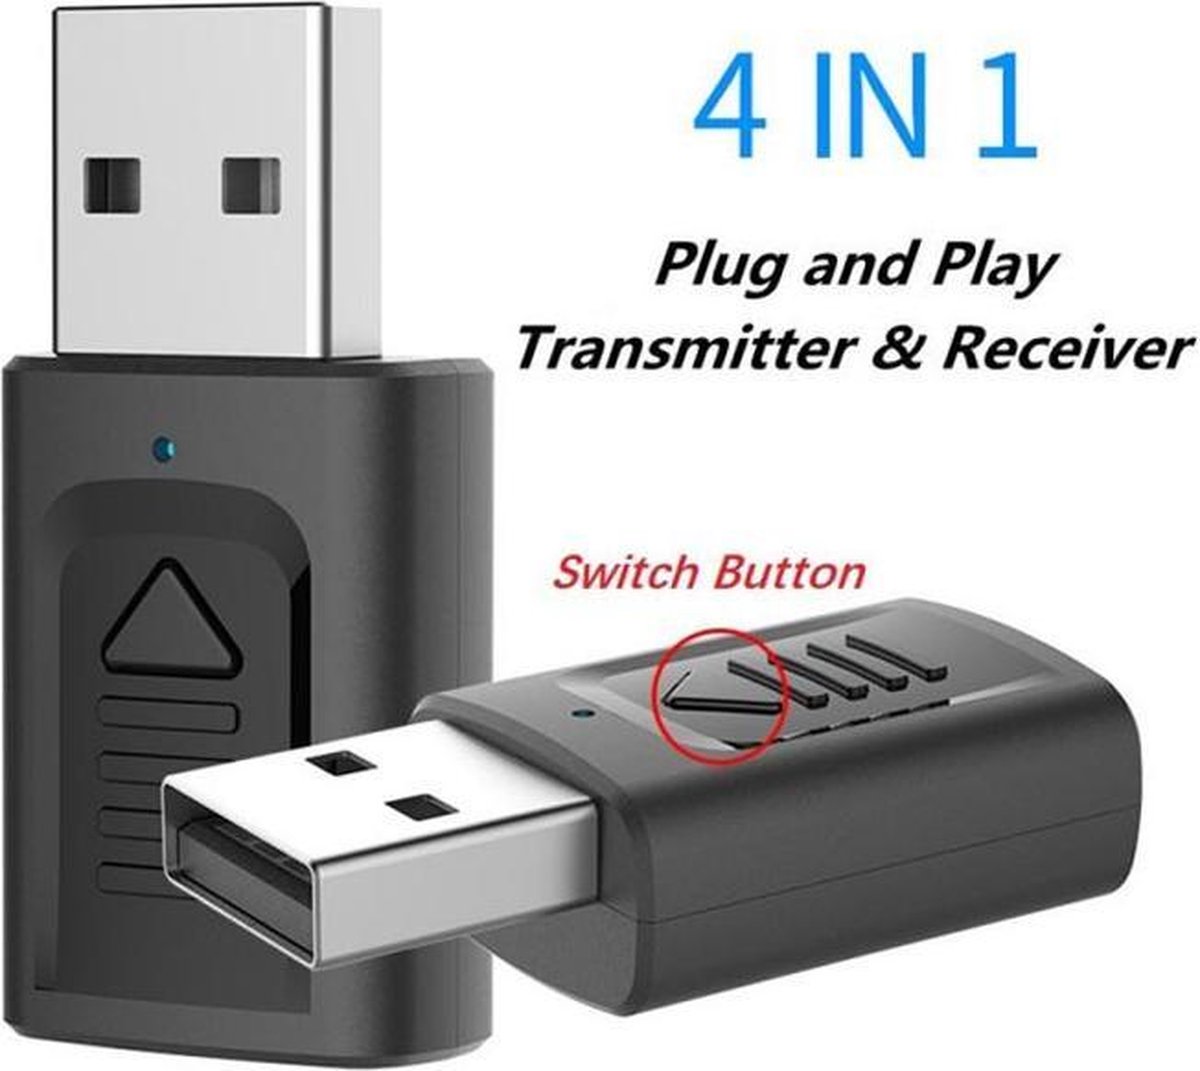 USB sans fil Bluetooth musique stéréo récepteur adaptateur ampli Dongle  Audio haut-parleur maison 3.5mm Jack Bluetooth récepteur connecter